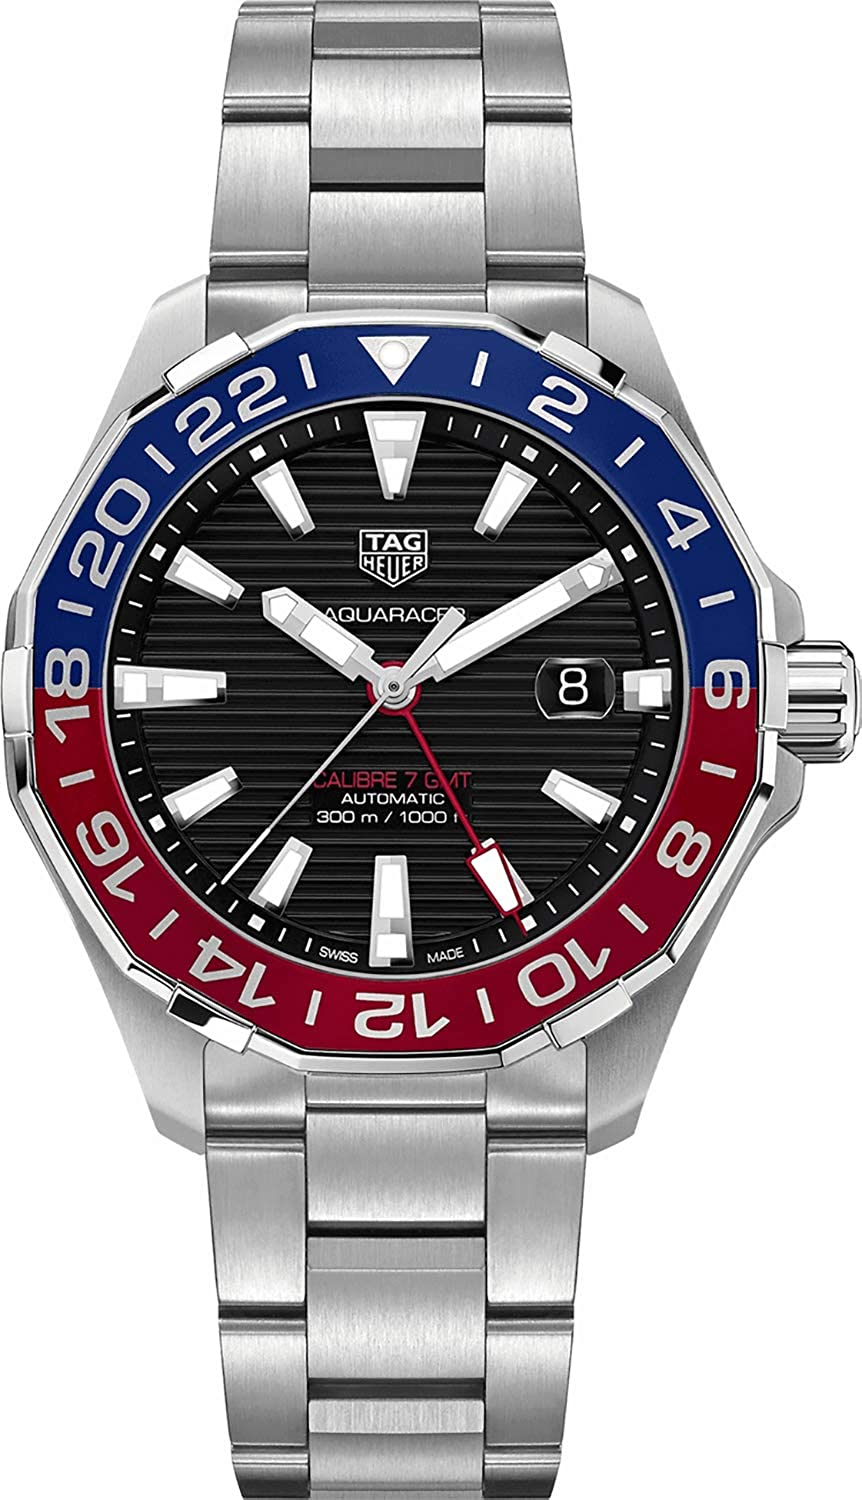 タグホイヤー アクアレーサー GMT 300m防水 自動巻き メンズ 腕時計 WAY201F.BA0927